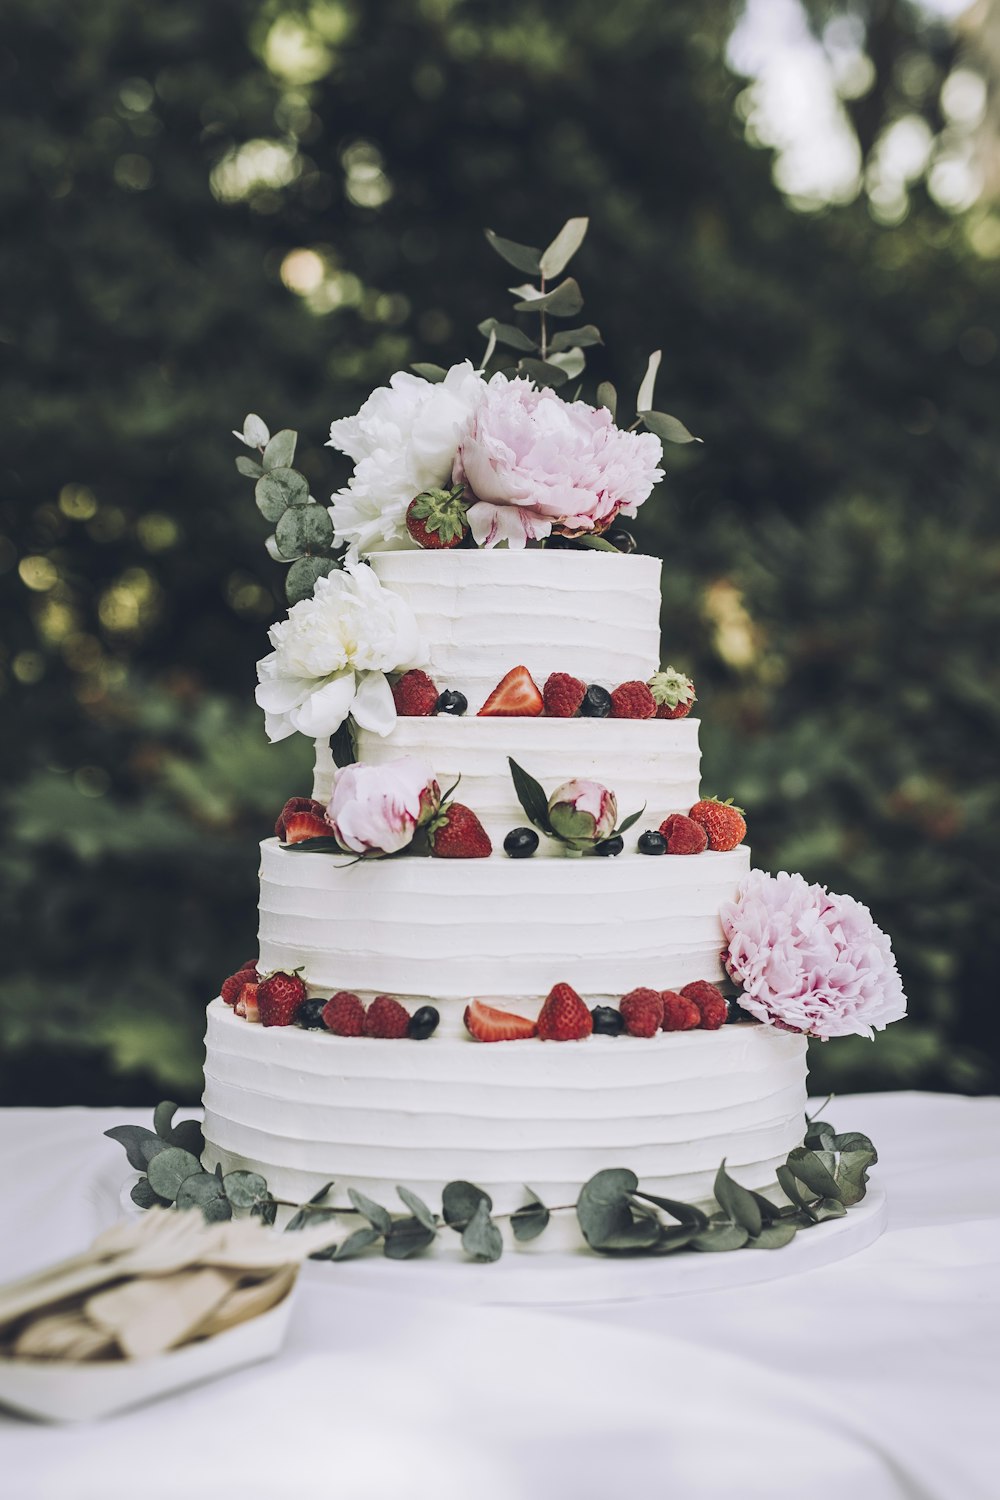 신선한 딸기와 꽃을 곁들인 하얀 웨딩 케이크